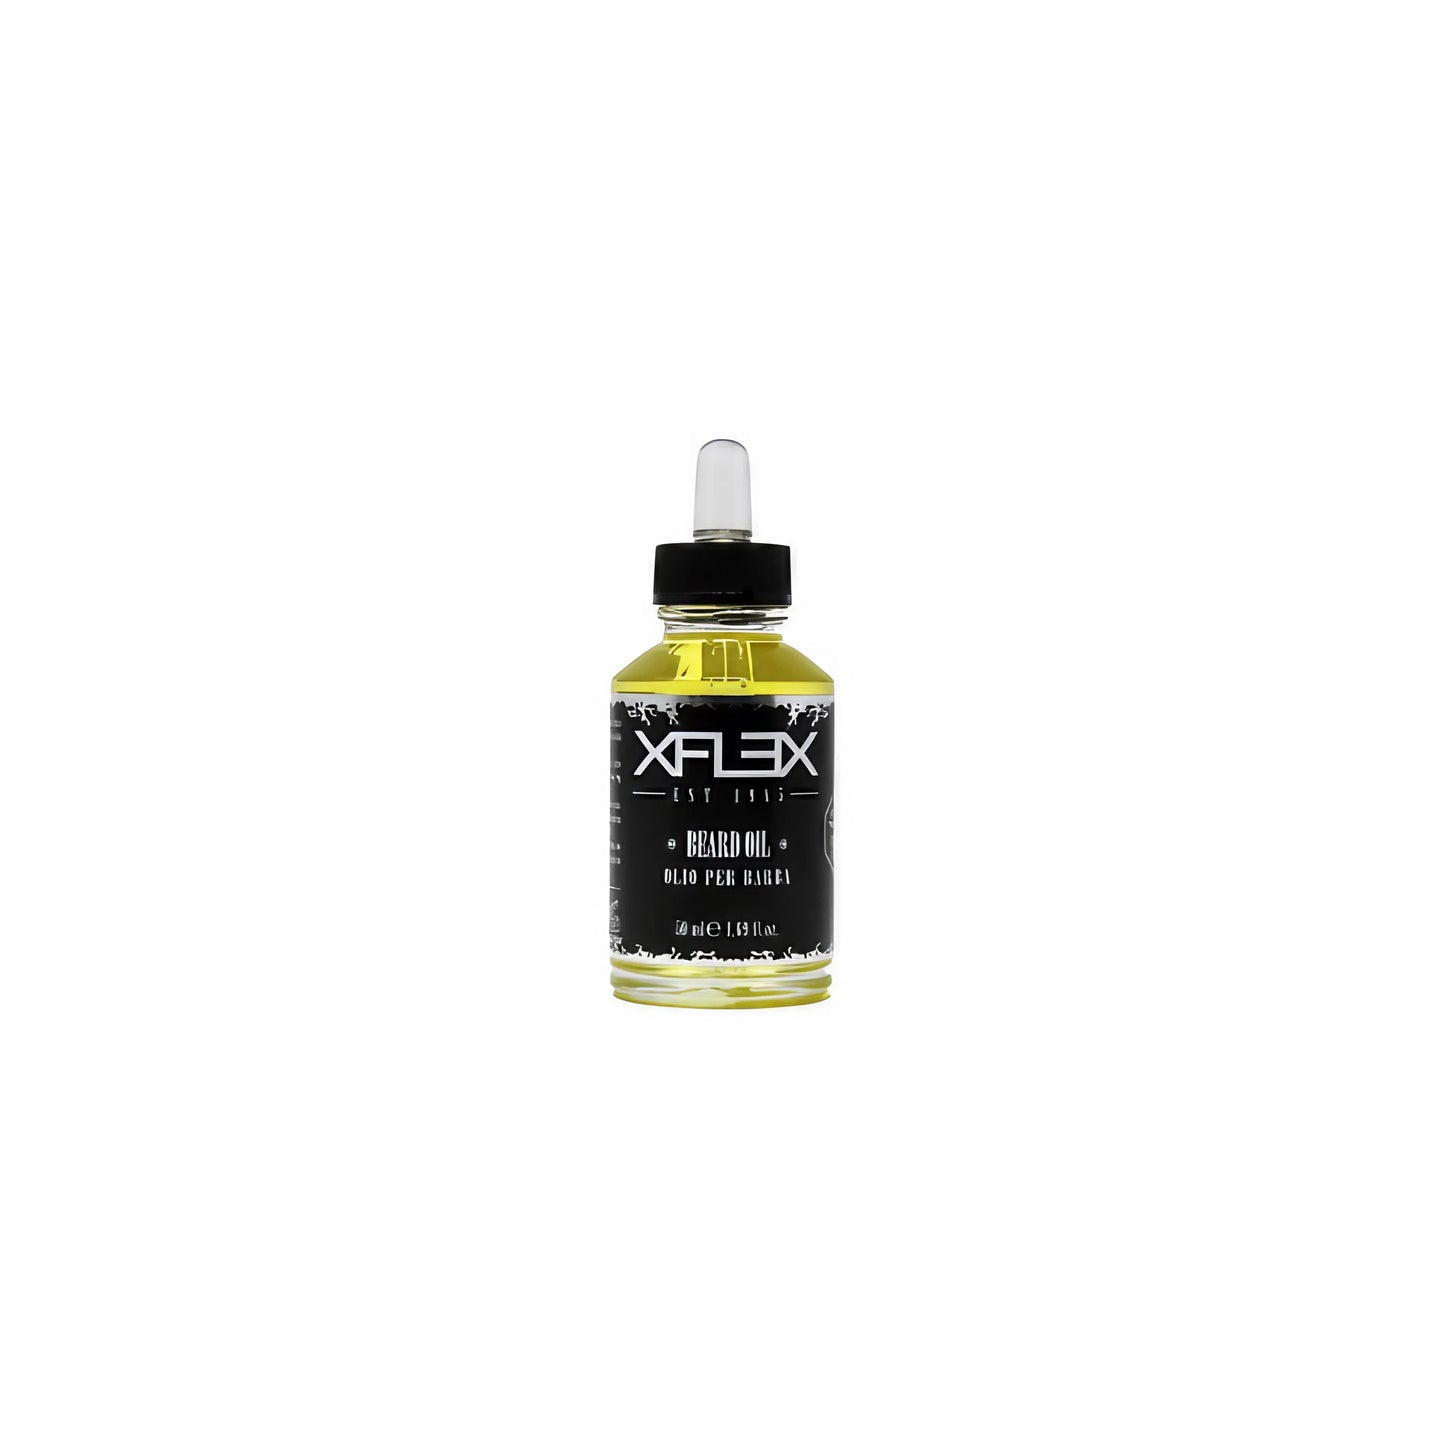 Xflex Beard Oil